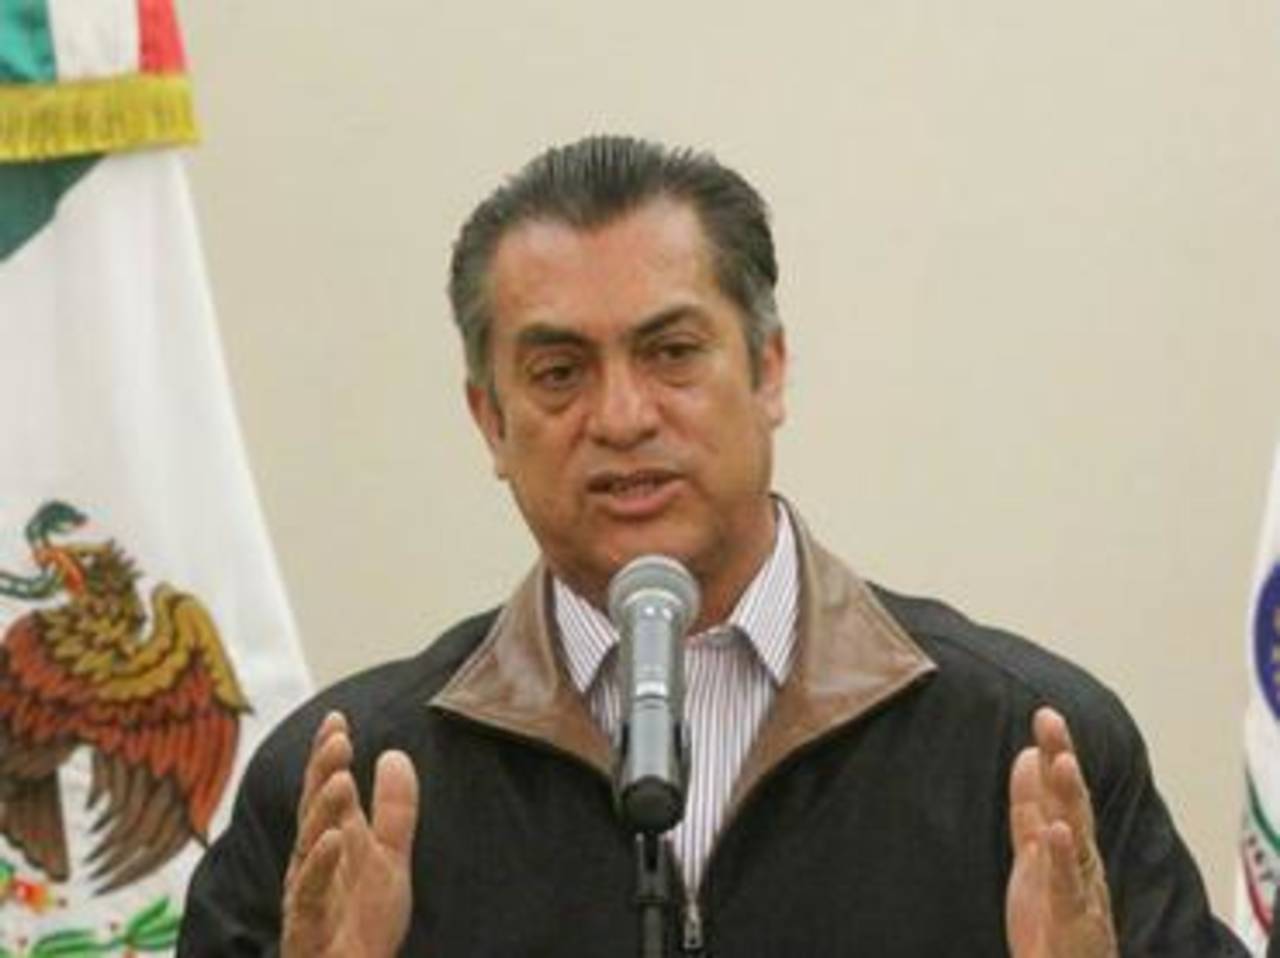 Familiares. El gobernador de Nuevo León dijo que se investiga a familiares de la víctima. 